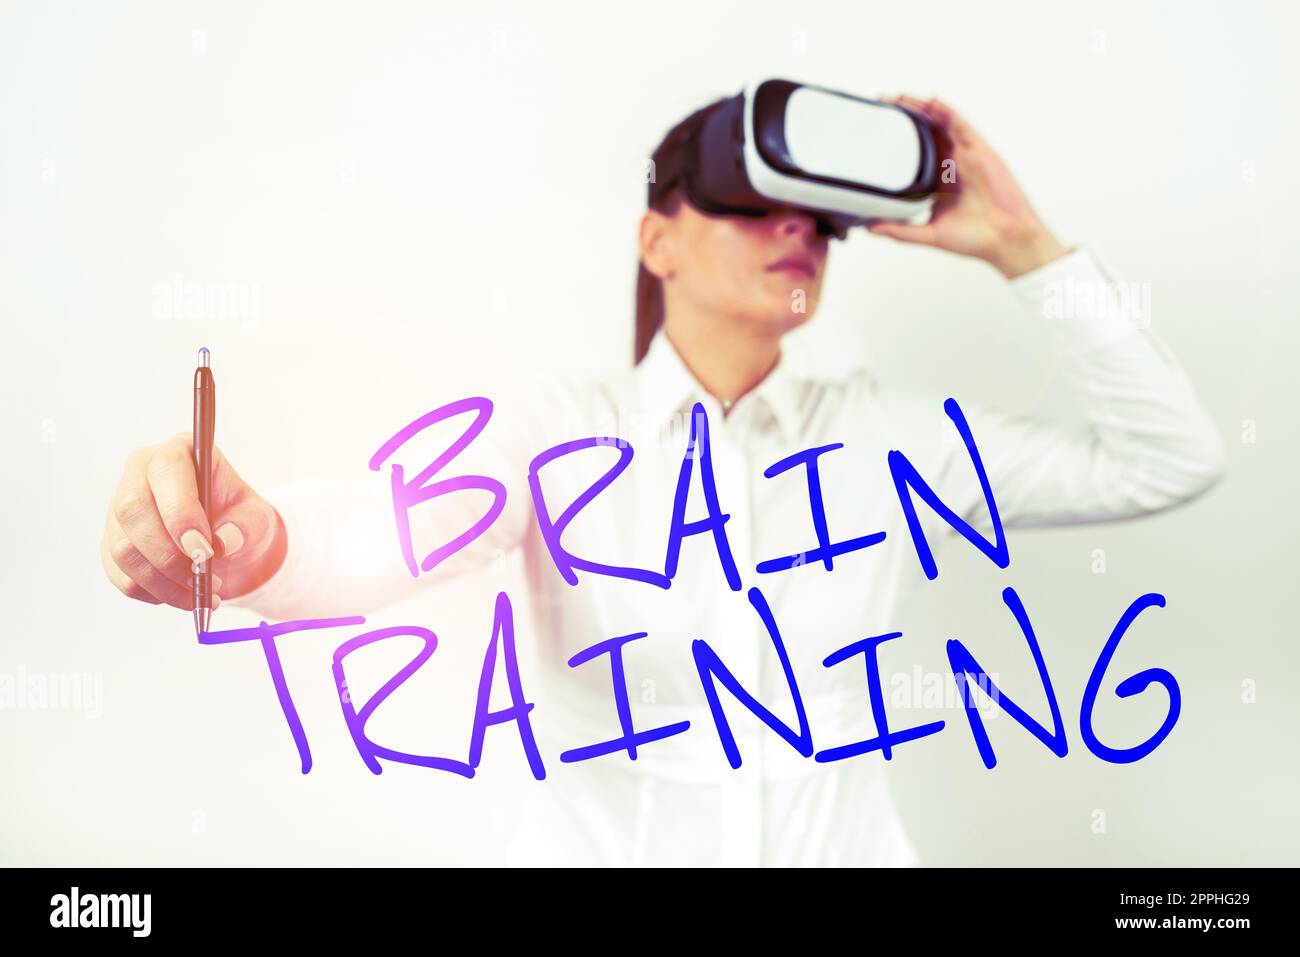 Manuale testo Brain Training. Attività mentali di approccio aziendale per mantenere o migliorare le capacità cognitive Foto Stock